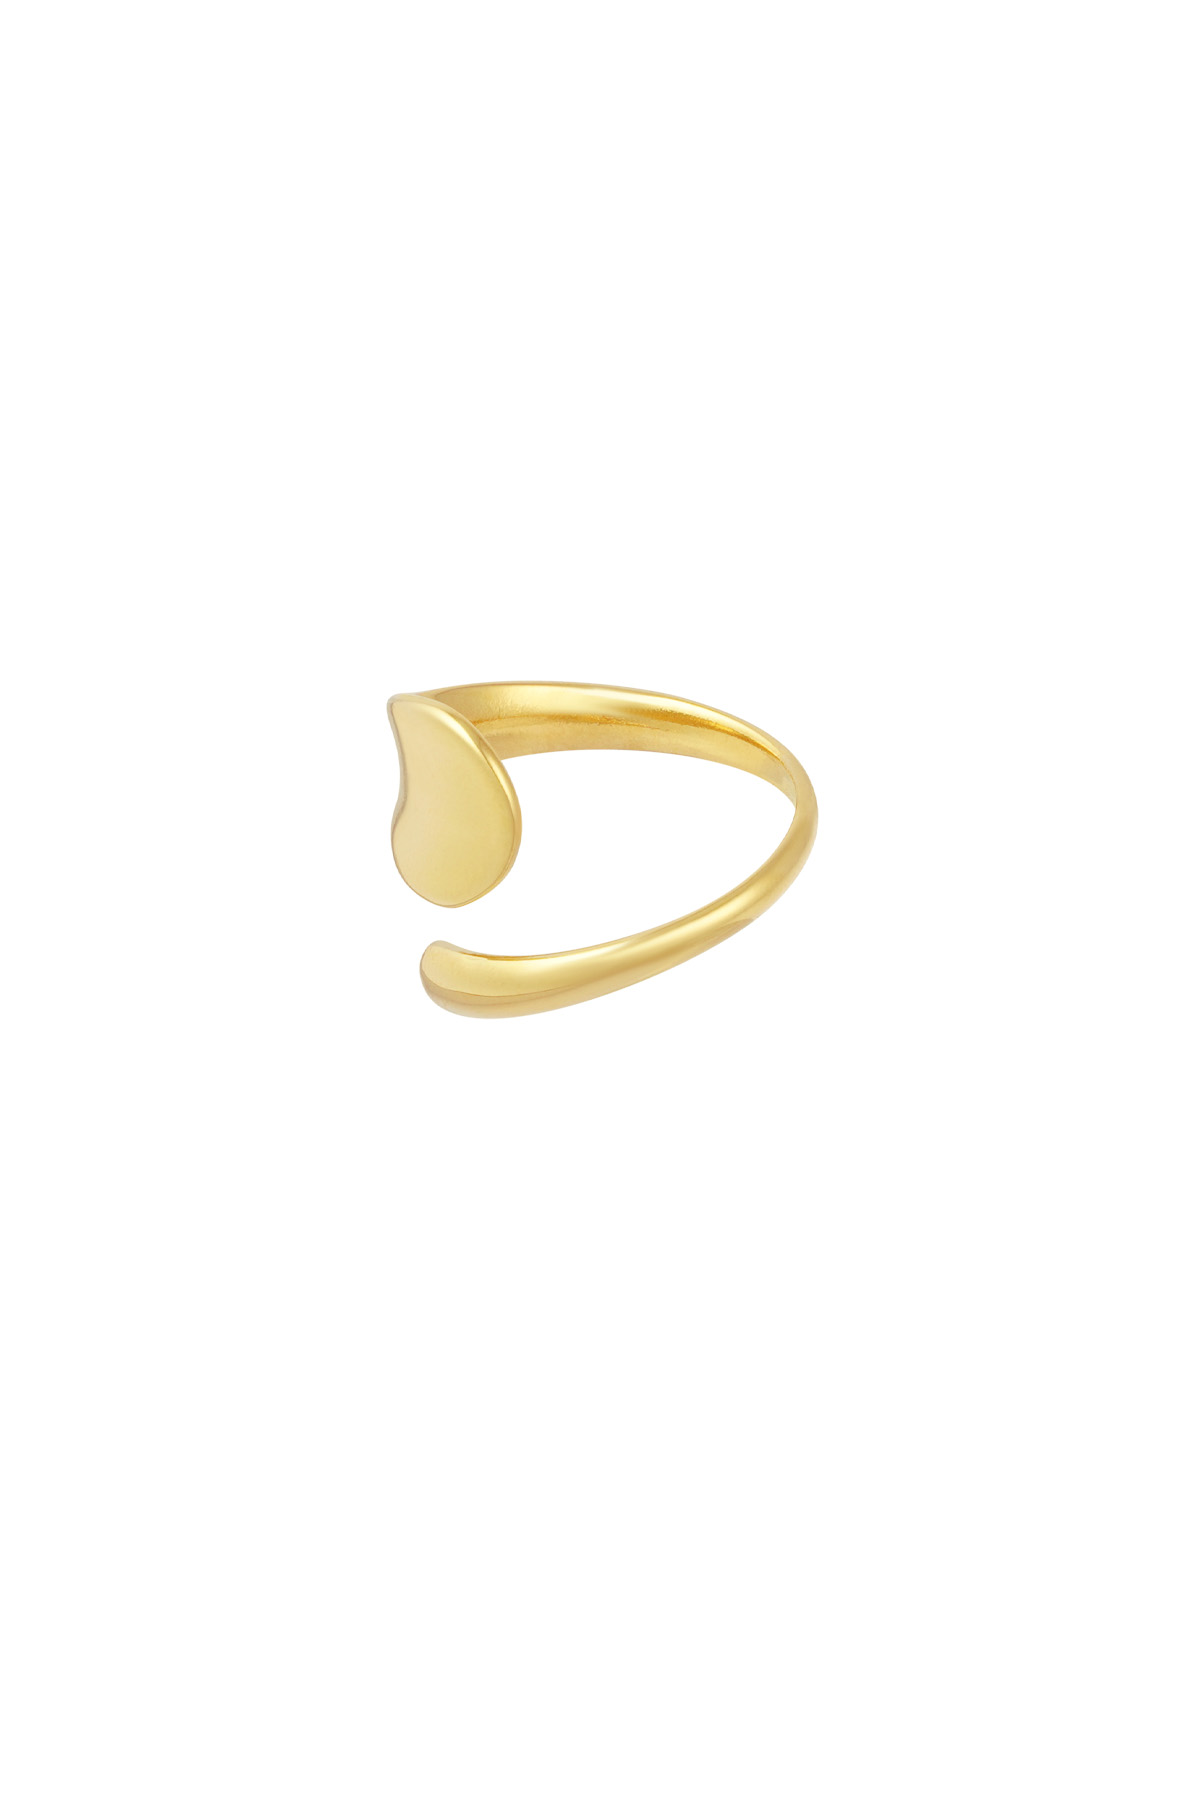 Reglas de simplicidad del anillo - oro h5 Imagen4